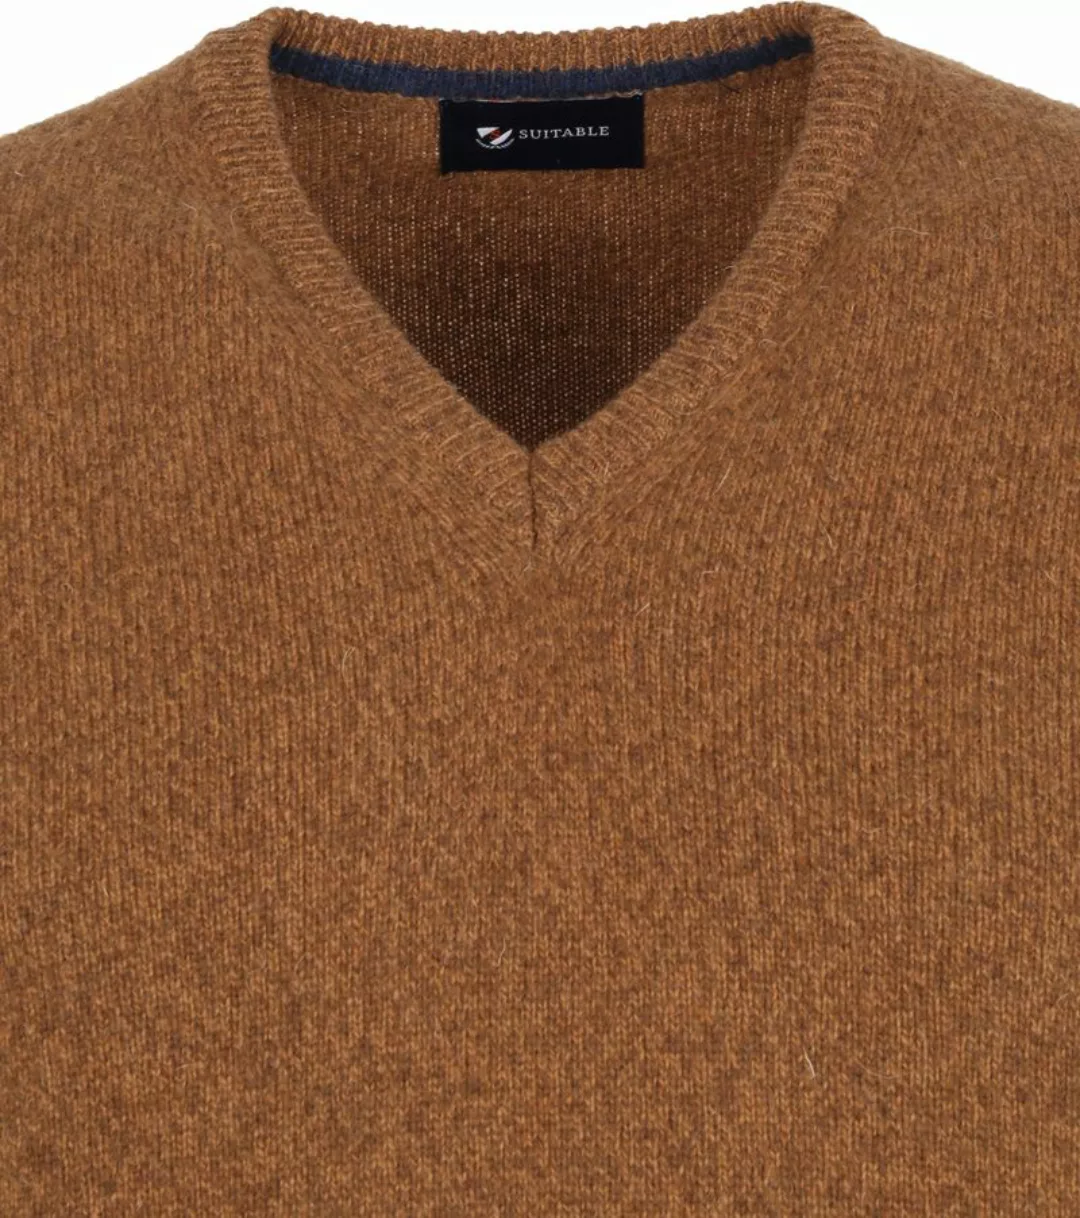 Suitable Lammwolle Pullover V-Ausschnitt Kamel - Größe XXL günstig online kaufen